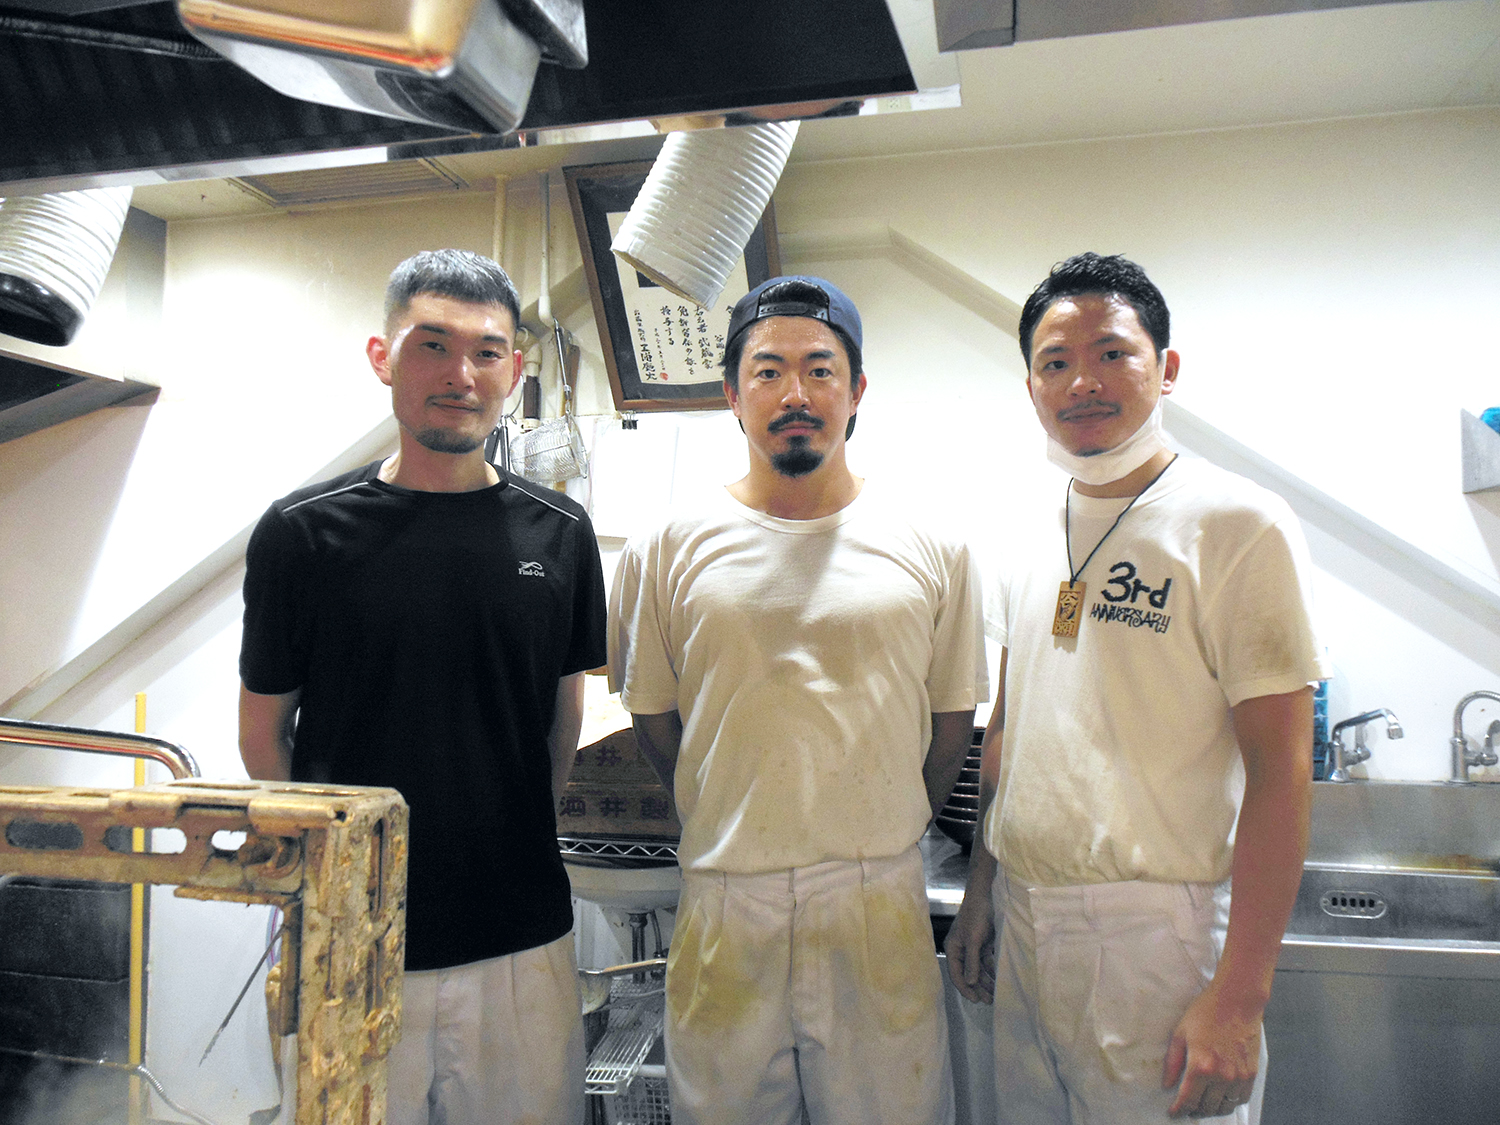 右から店主の谷瀬さん、スタッフの横山さんと山根さん。3人の見事な連係プレーは見ものだ。